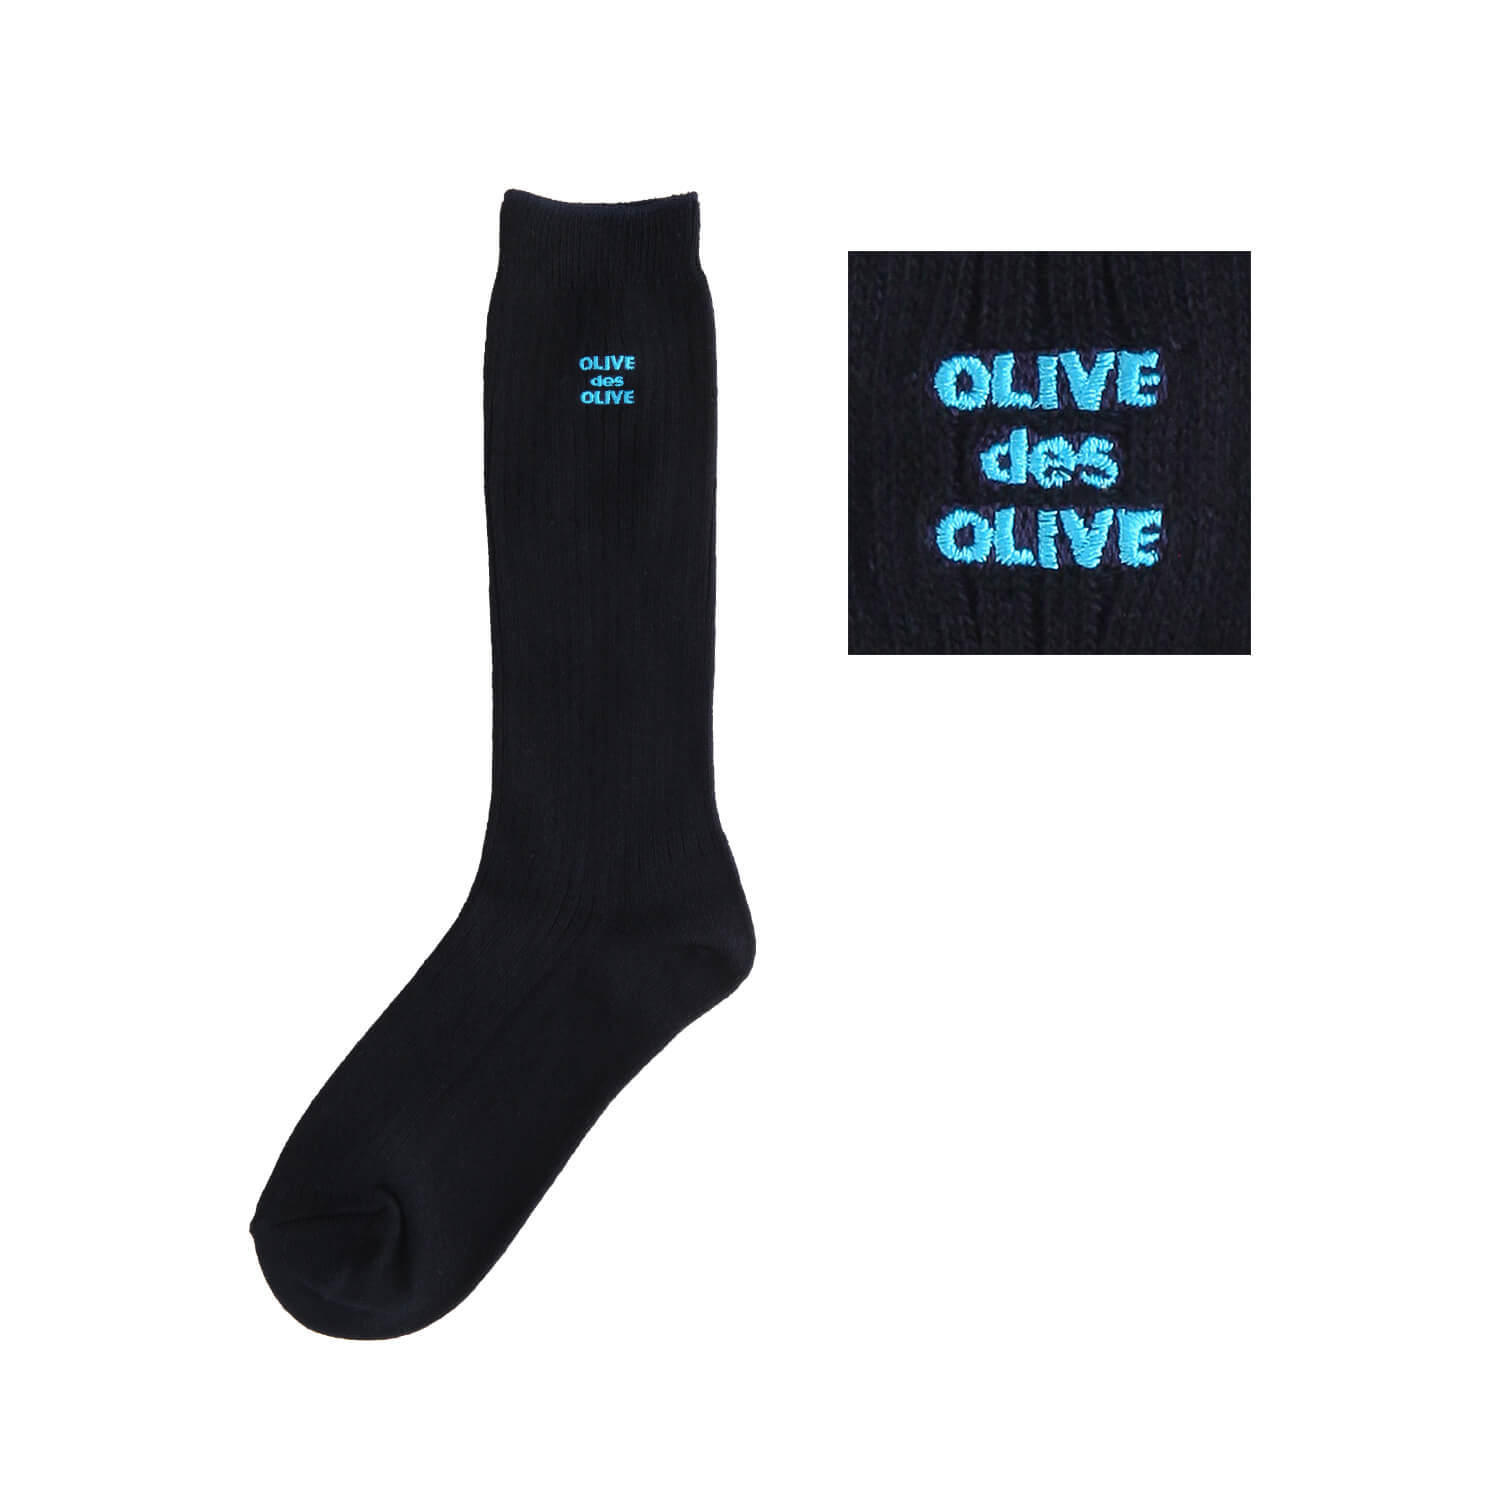 OLIVE des OLIVEのポップなロゴ刺繍入りのレギュラーソックス。刺繍カラー-70ブルー